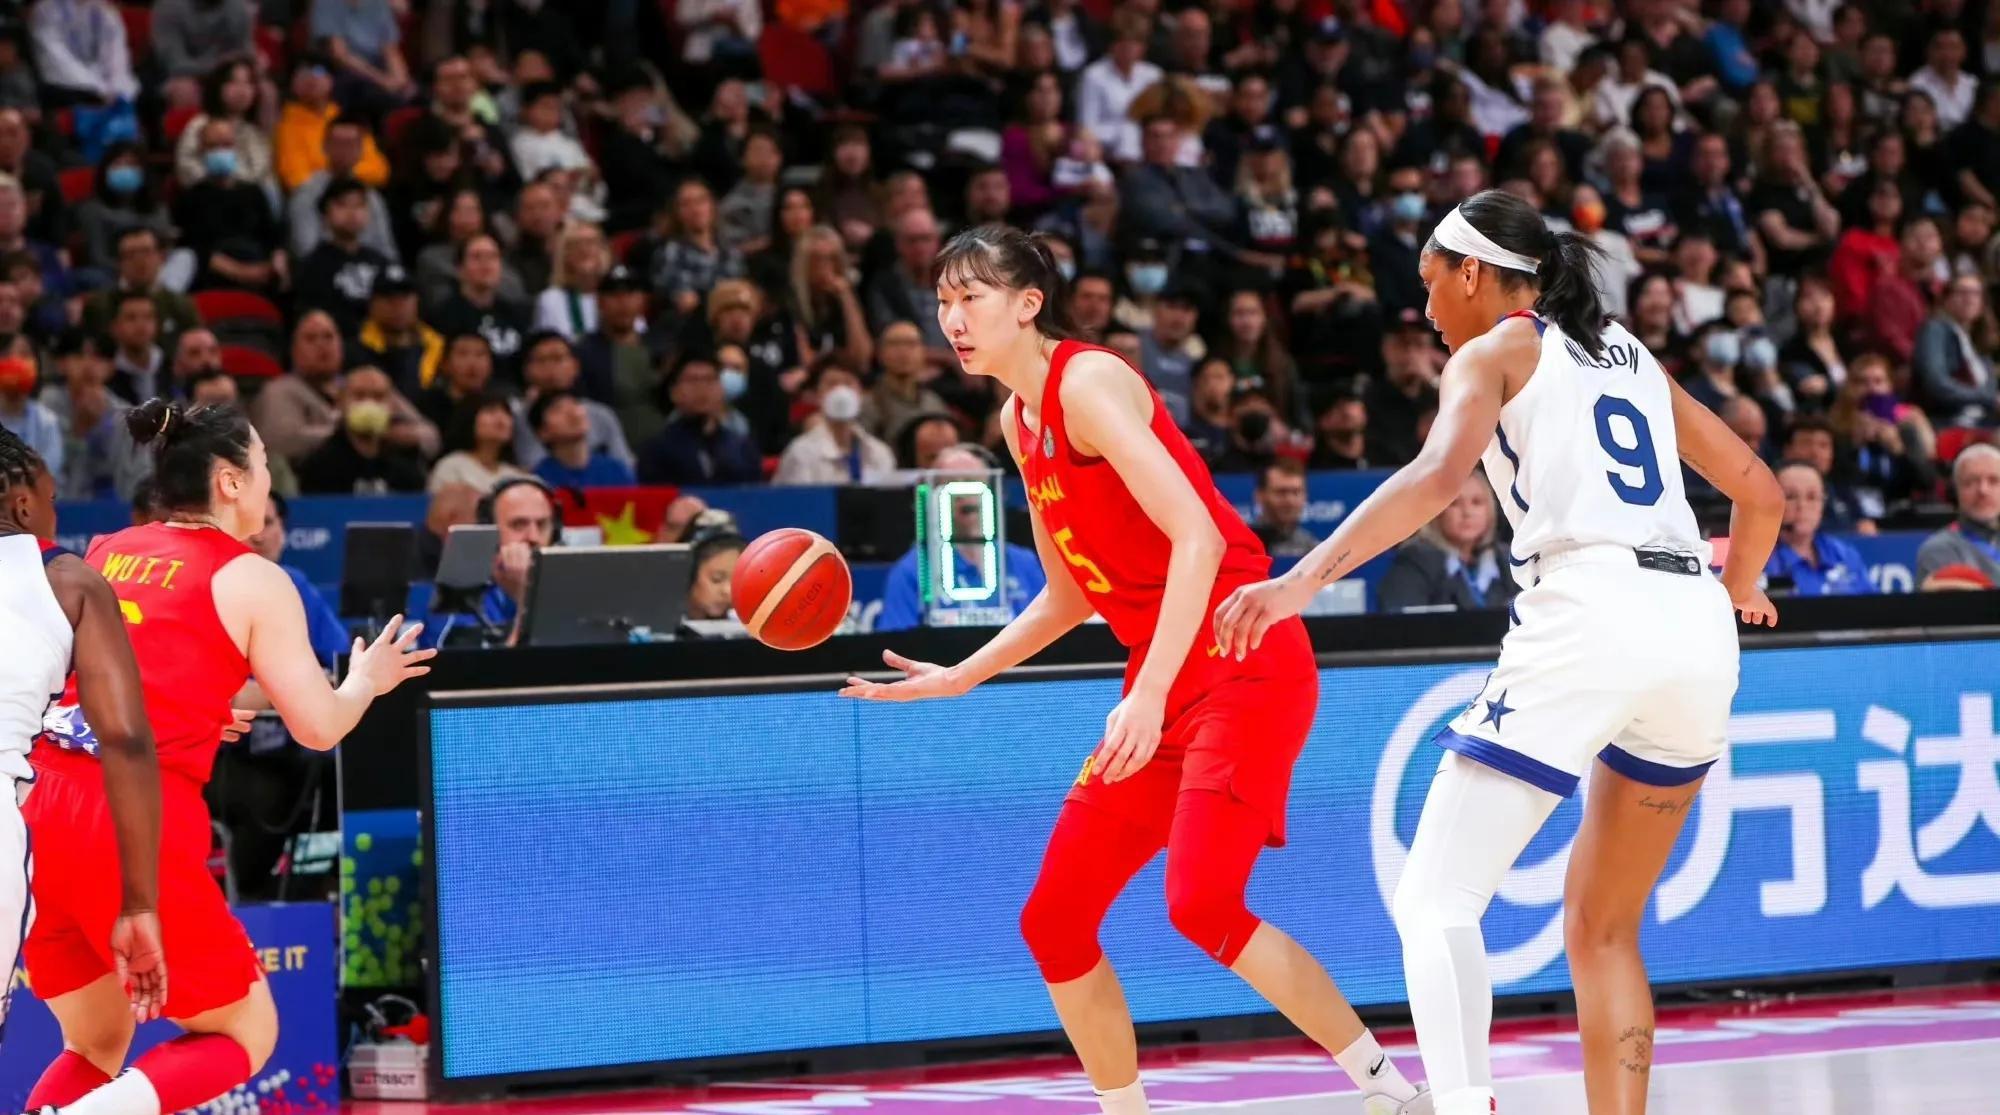 Nút bóng rổ của phụ nữ Pháp, Zheng Wei của Pháp, mở ra Tháp đôi cơ hội của Nữ hoàng đã khiến đội bóng tiến lên (1)